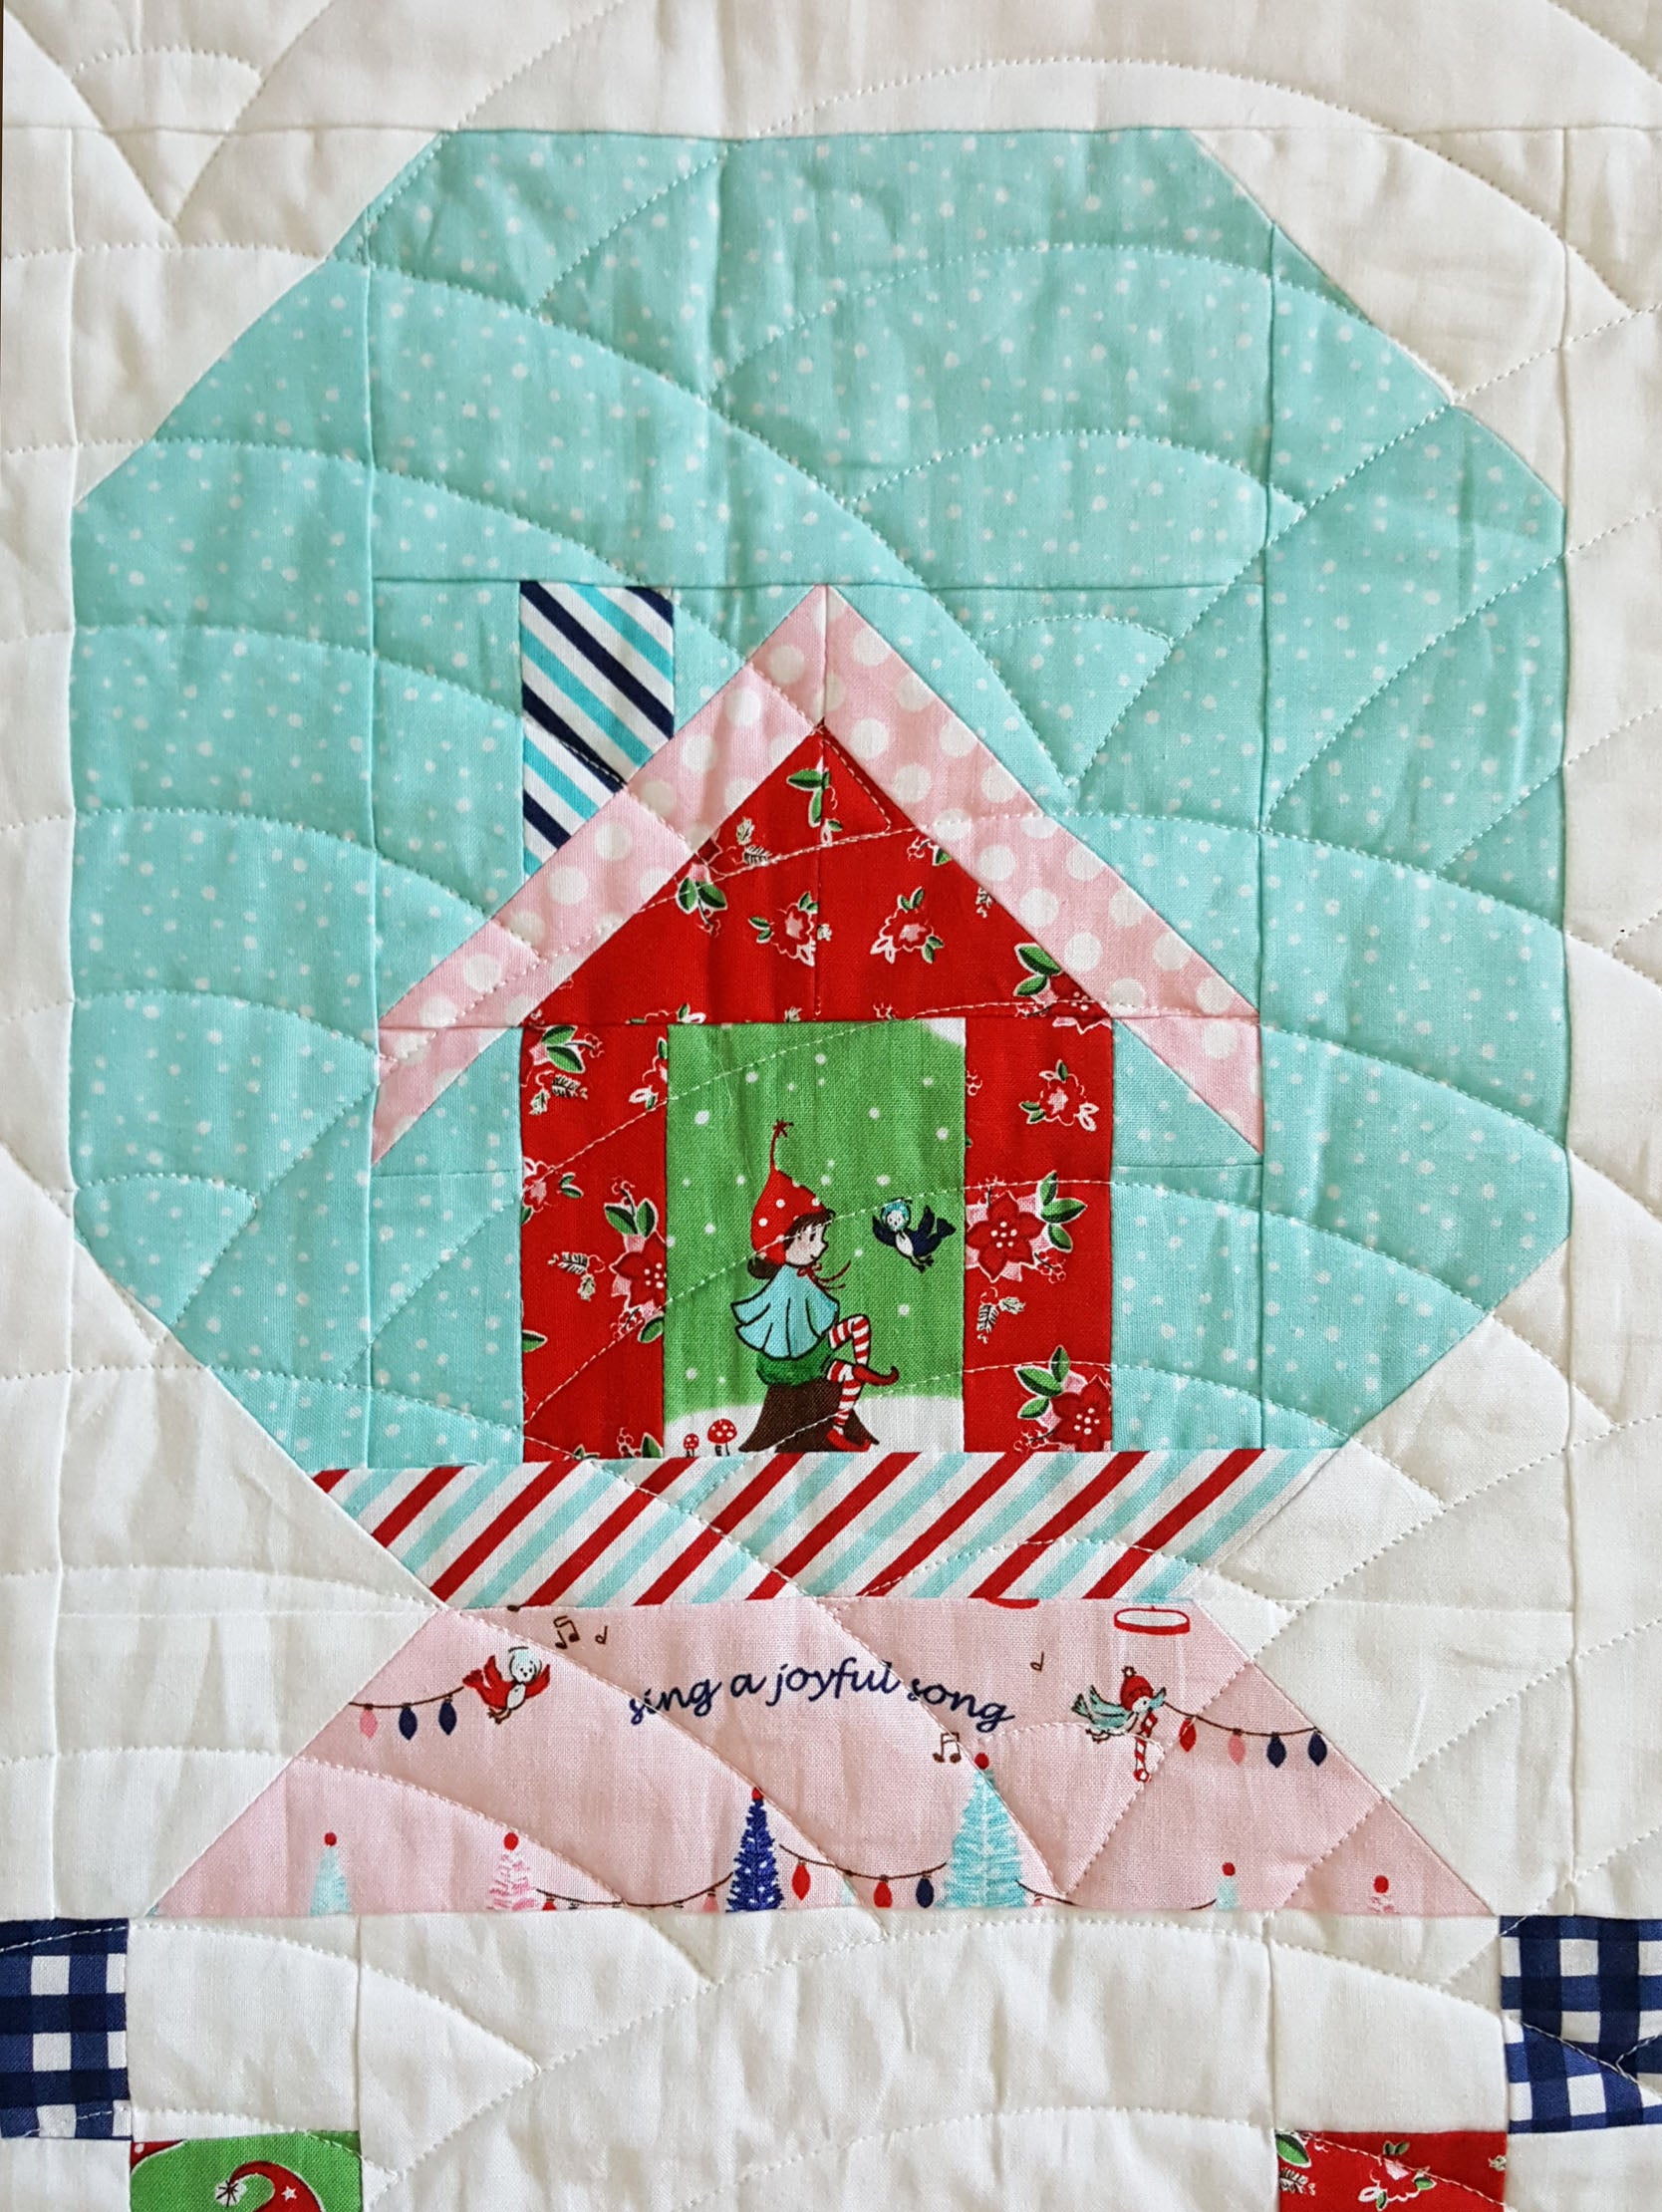 Winter Wonderland Quilt Pattern - PDF